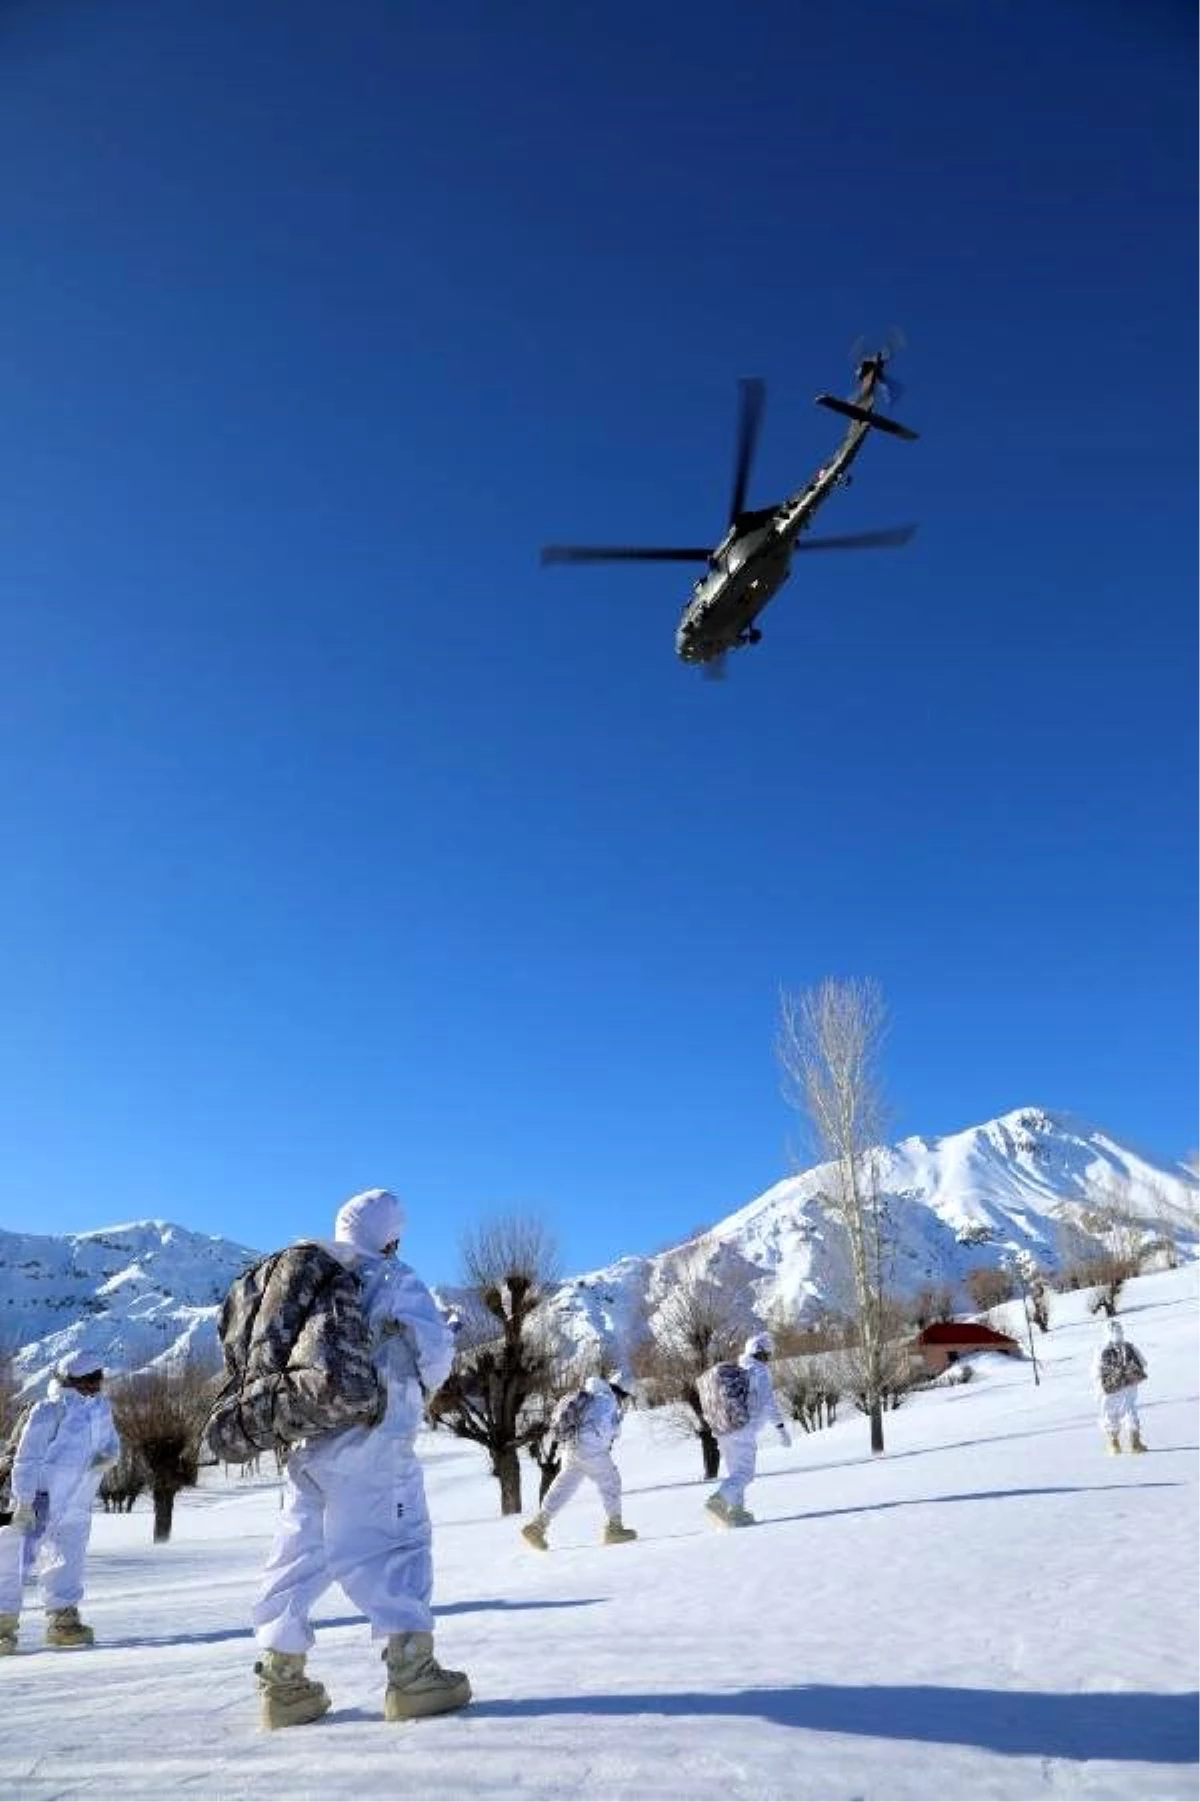 Kardan yolu kapanan köye, jandarmadan helikopterle gıda yardımı